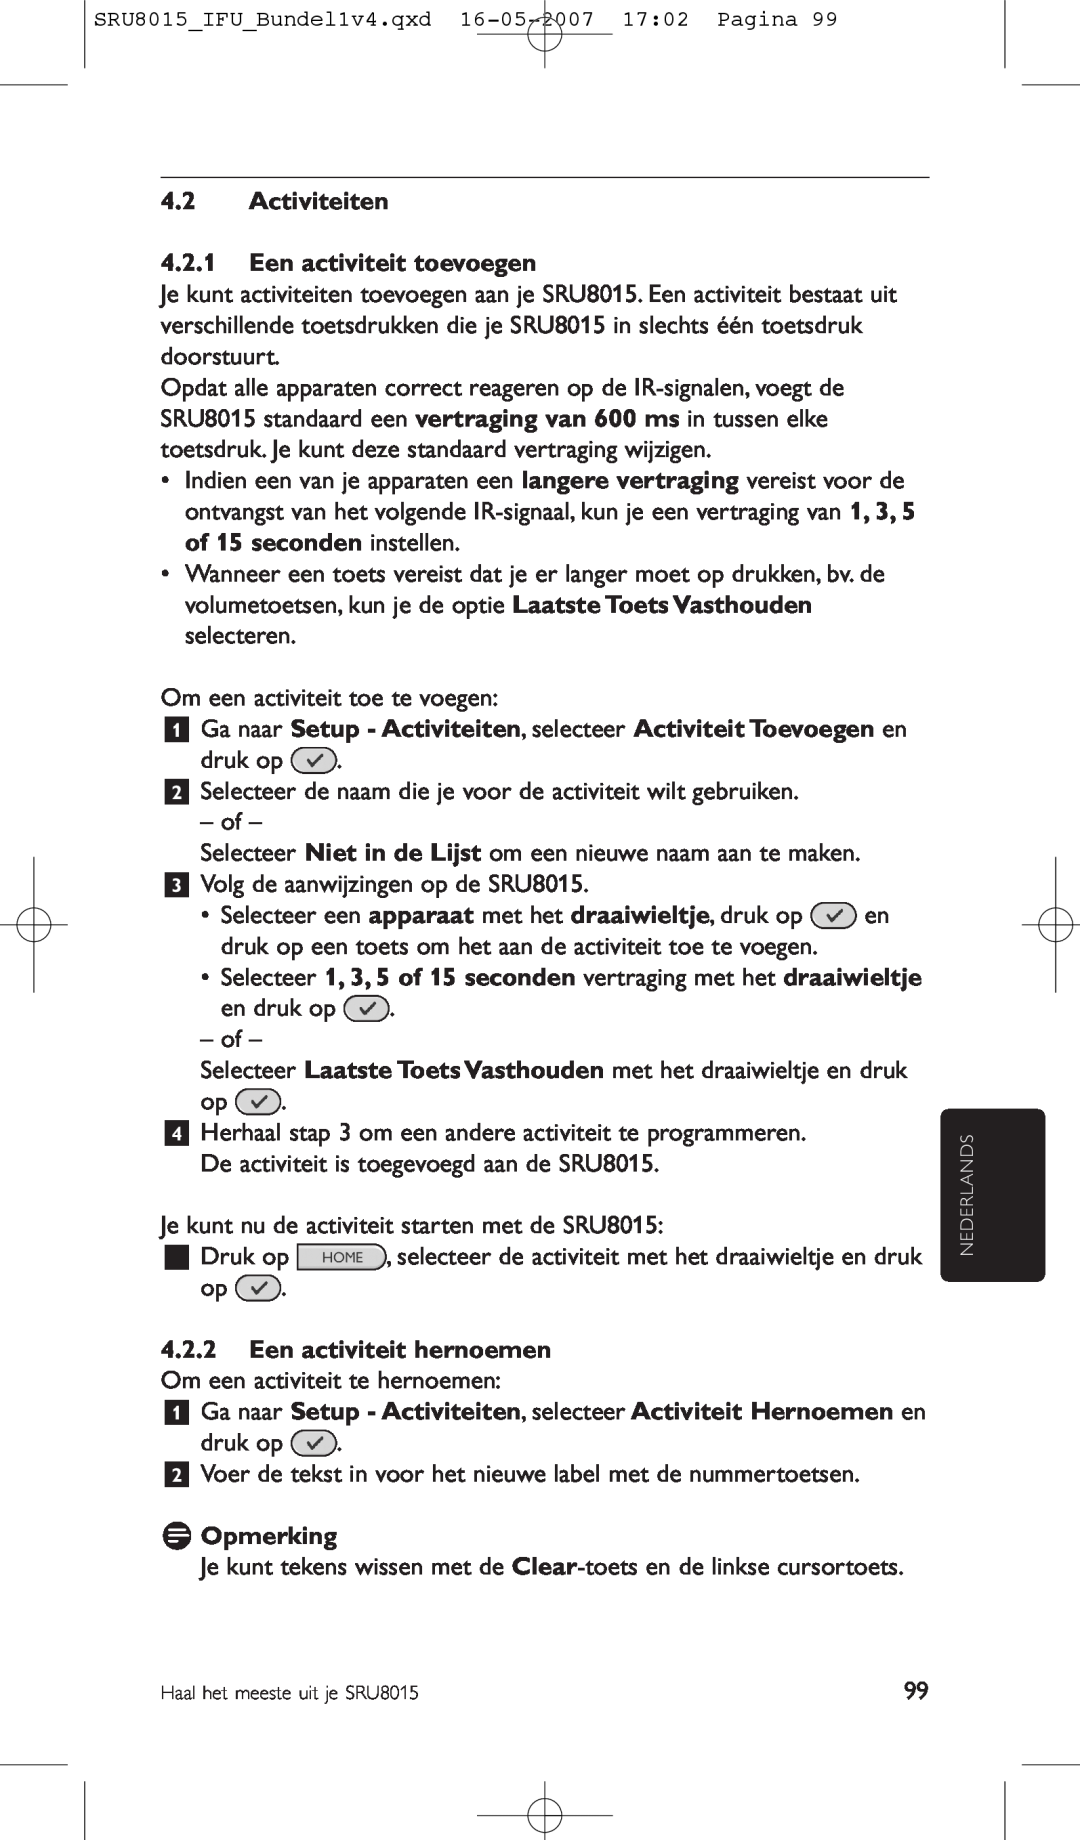 Philips SRU8015 manual Activiteiten 4.2.1 Een activiteit toevoegen, Een activiteit hernoemen Om een activiteit te hernoemen 